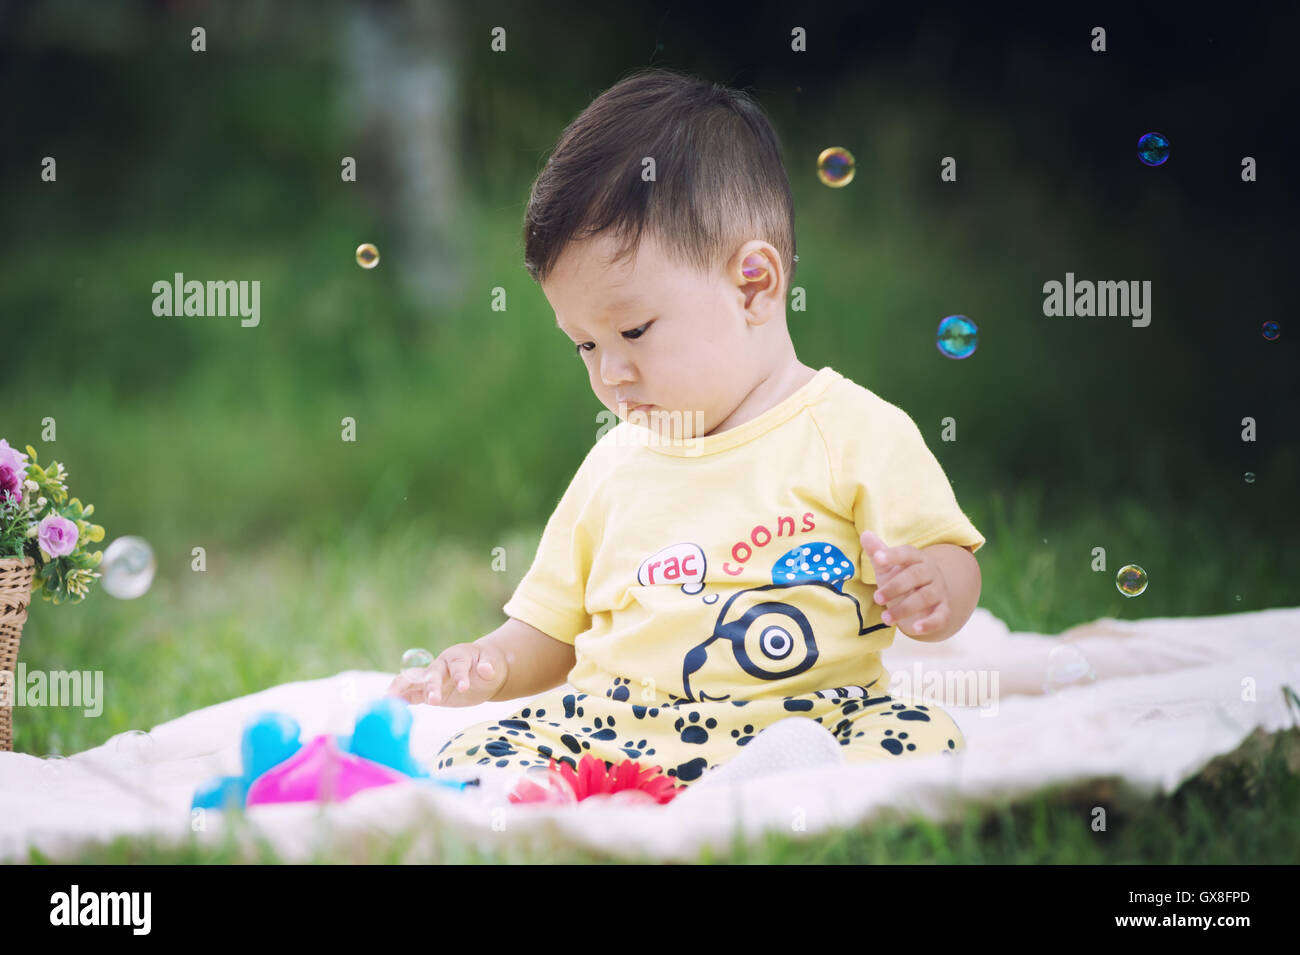 Asia bambino seduto sul prato verde nel parco con bolle di sapone Foto Stock